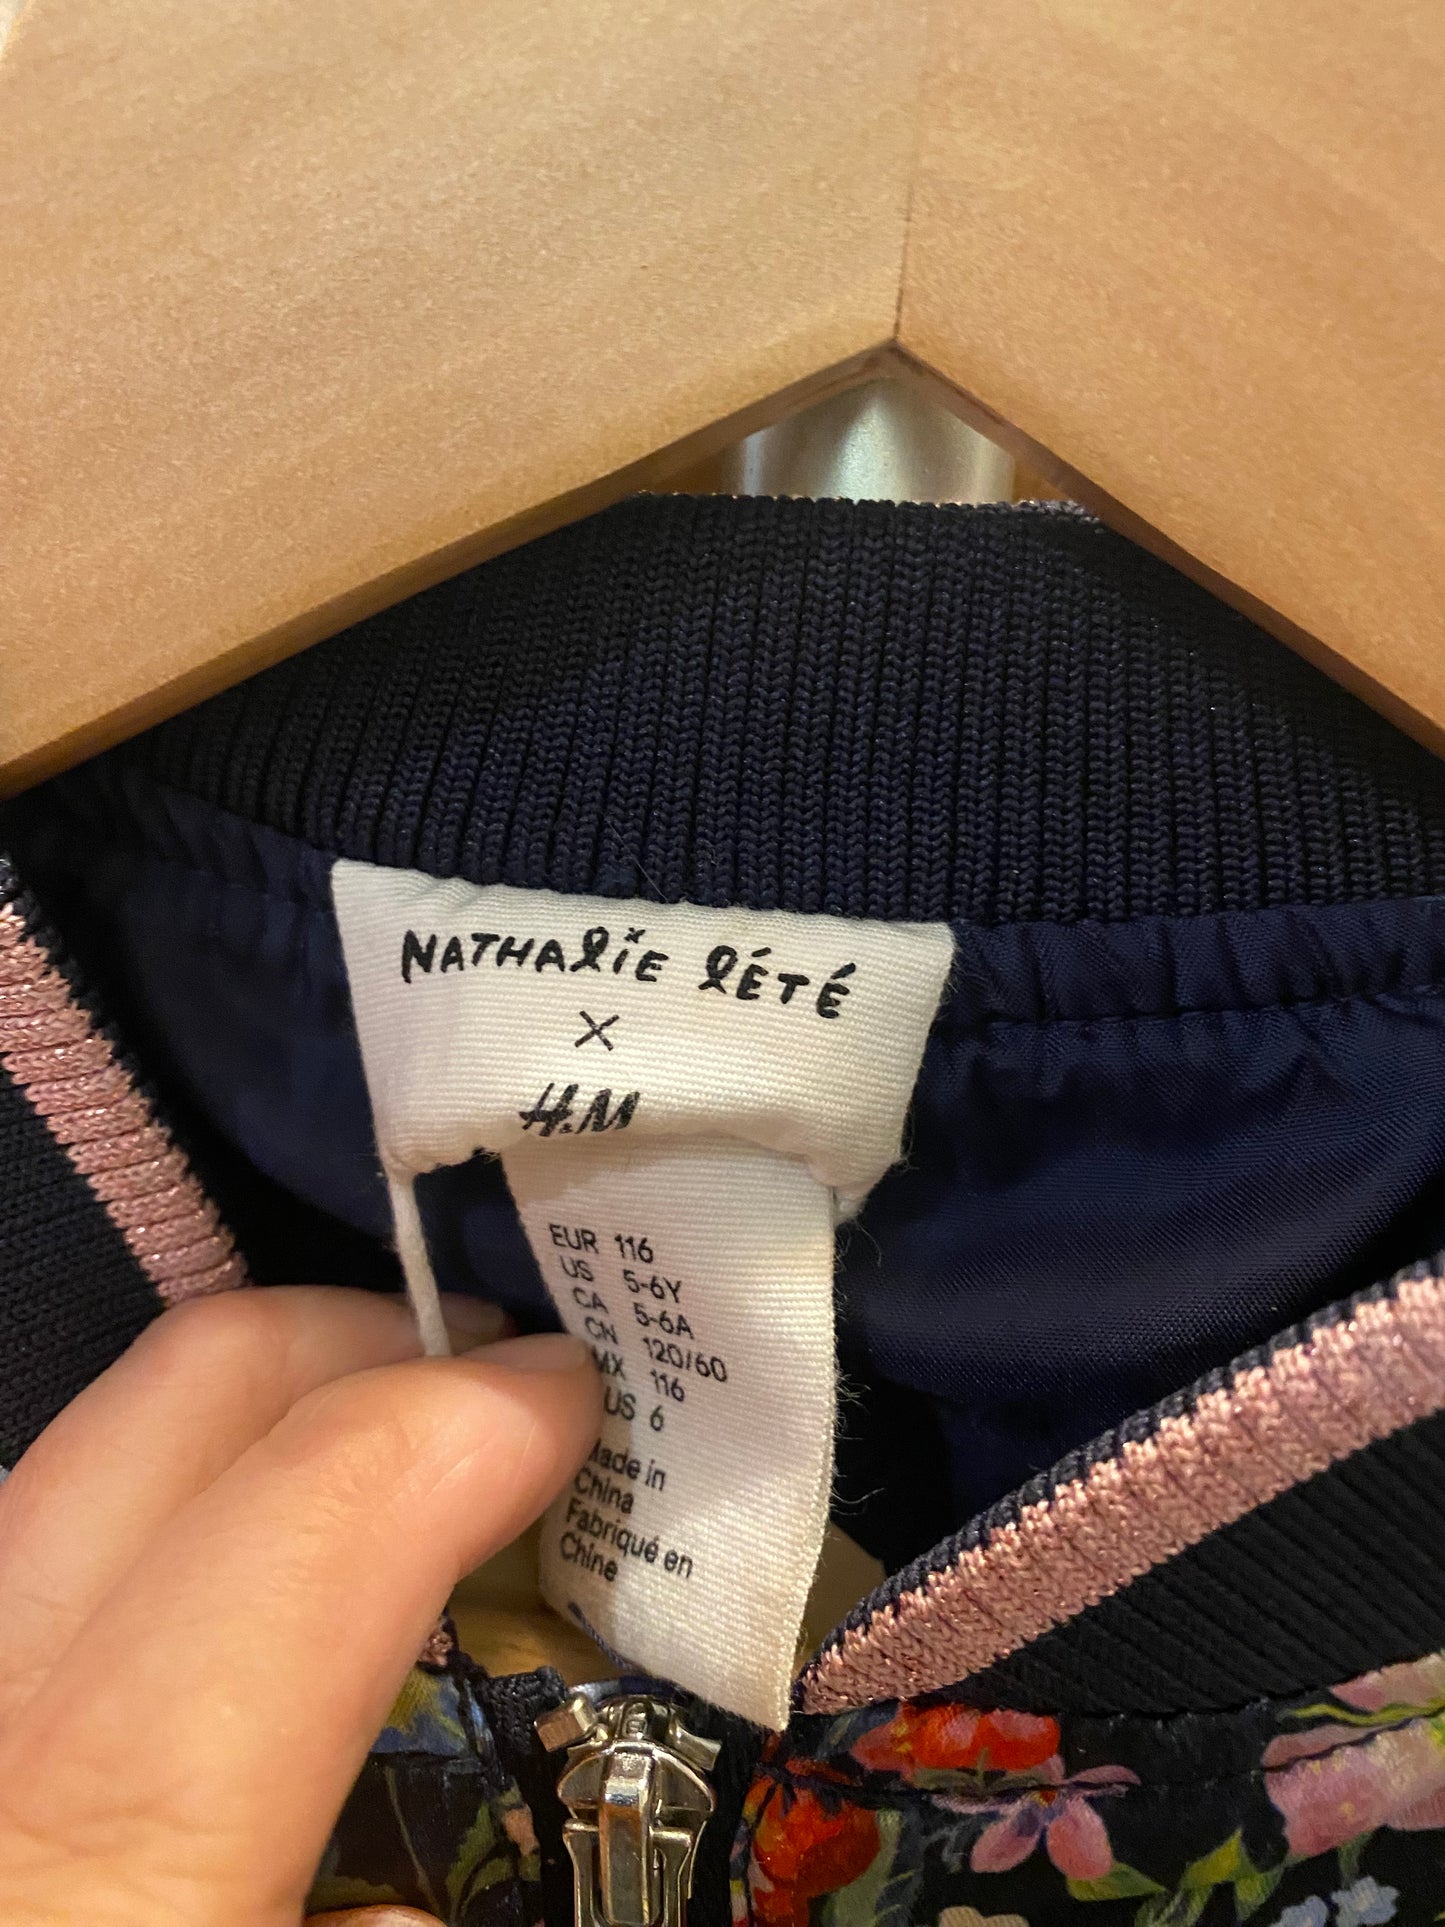 Consignment #7790-01 Nathalie Lété x H&M floral satin bomber jacket sz 5-6Y